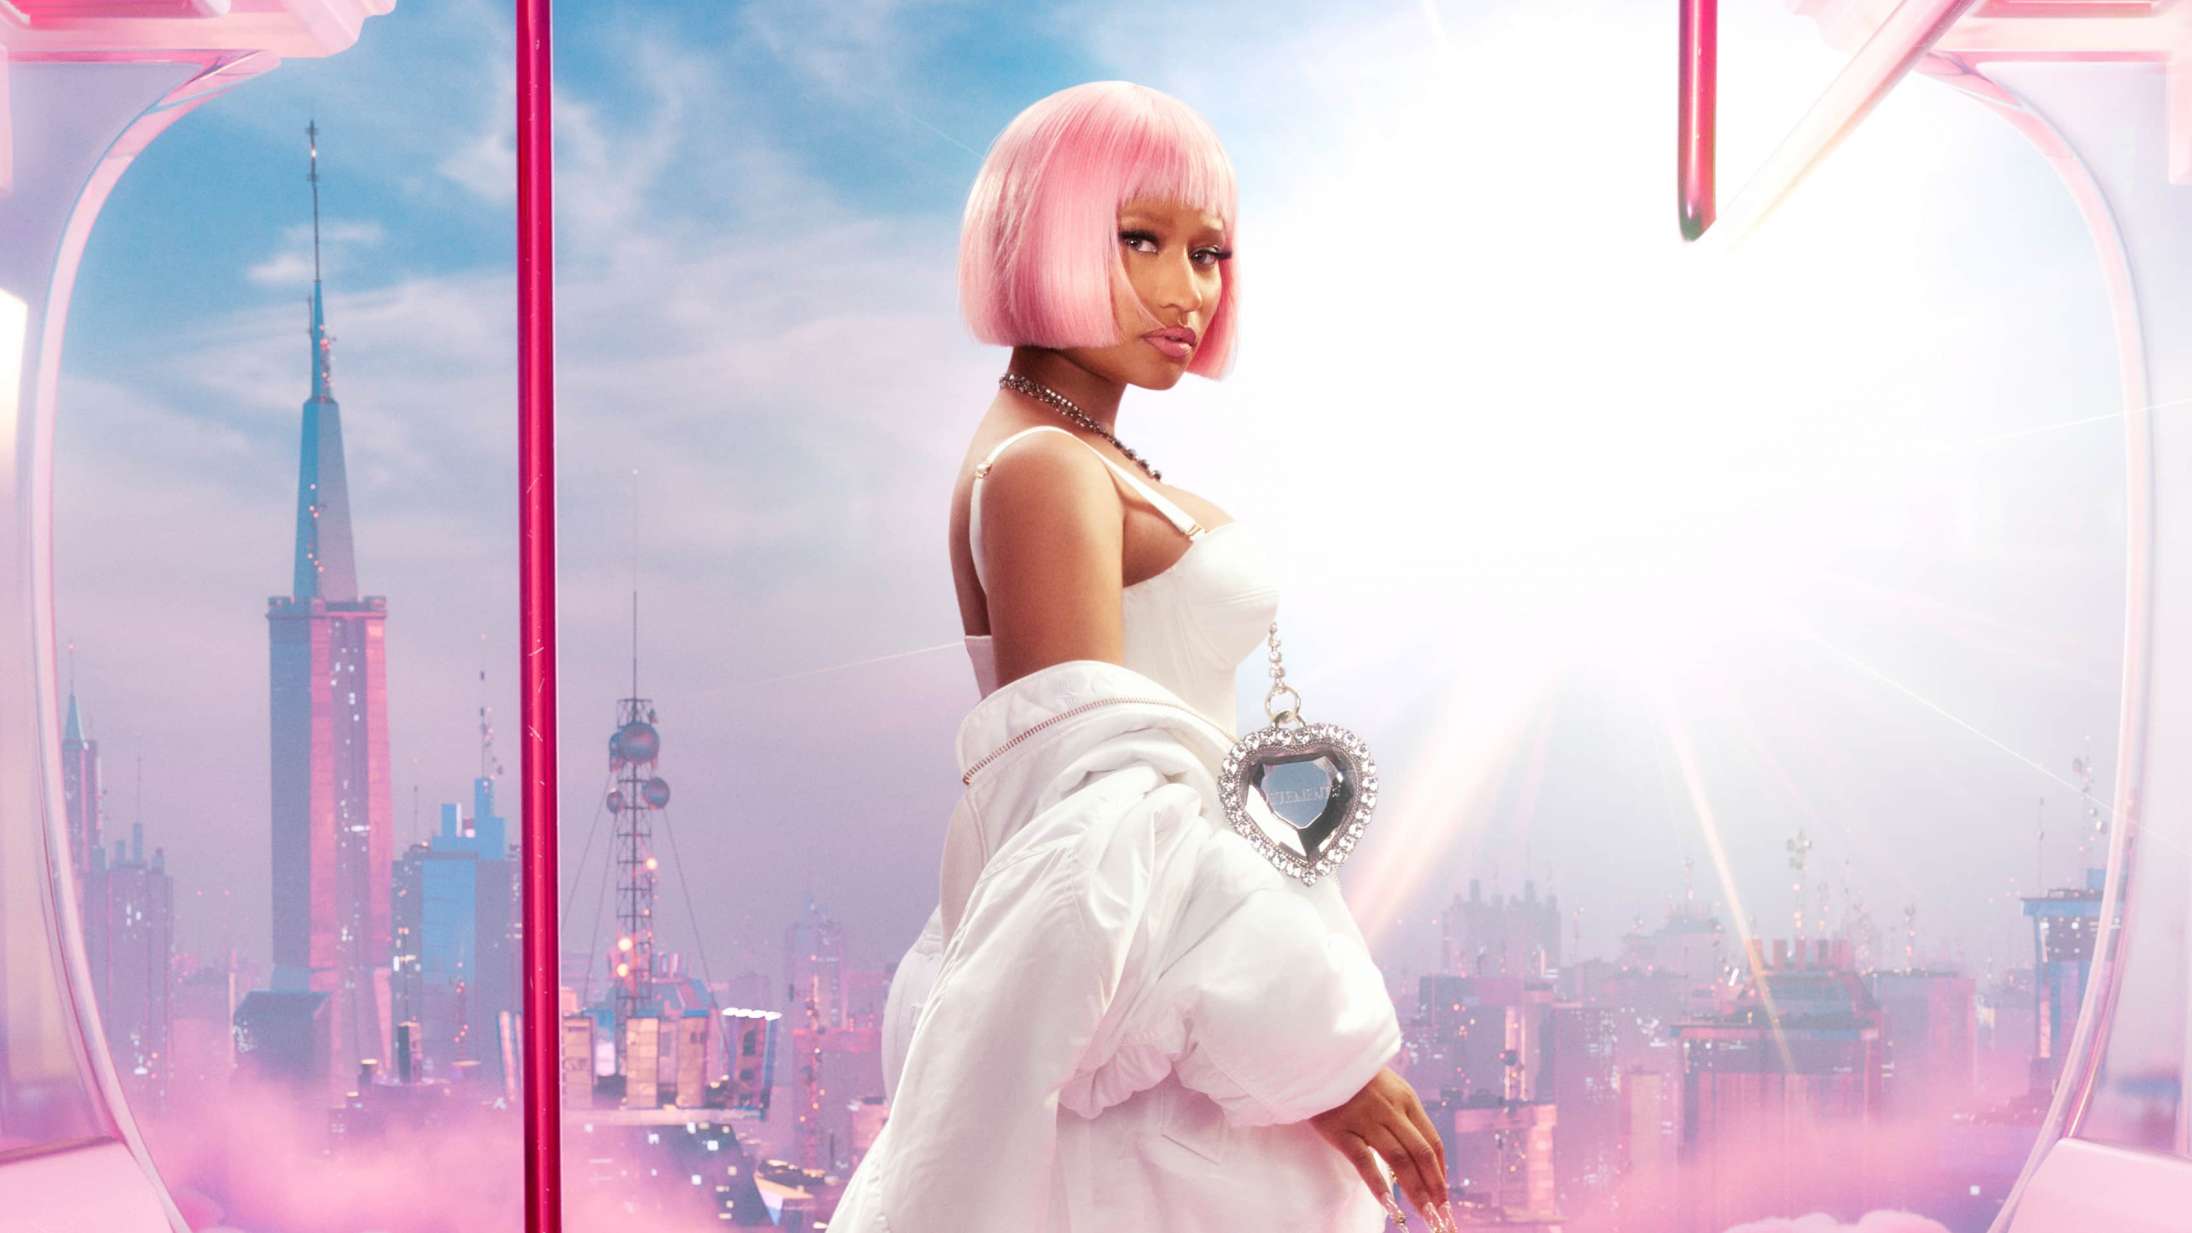 Nicki Minaj giver en »ærlig rangering« af sine egne album